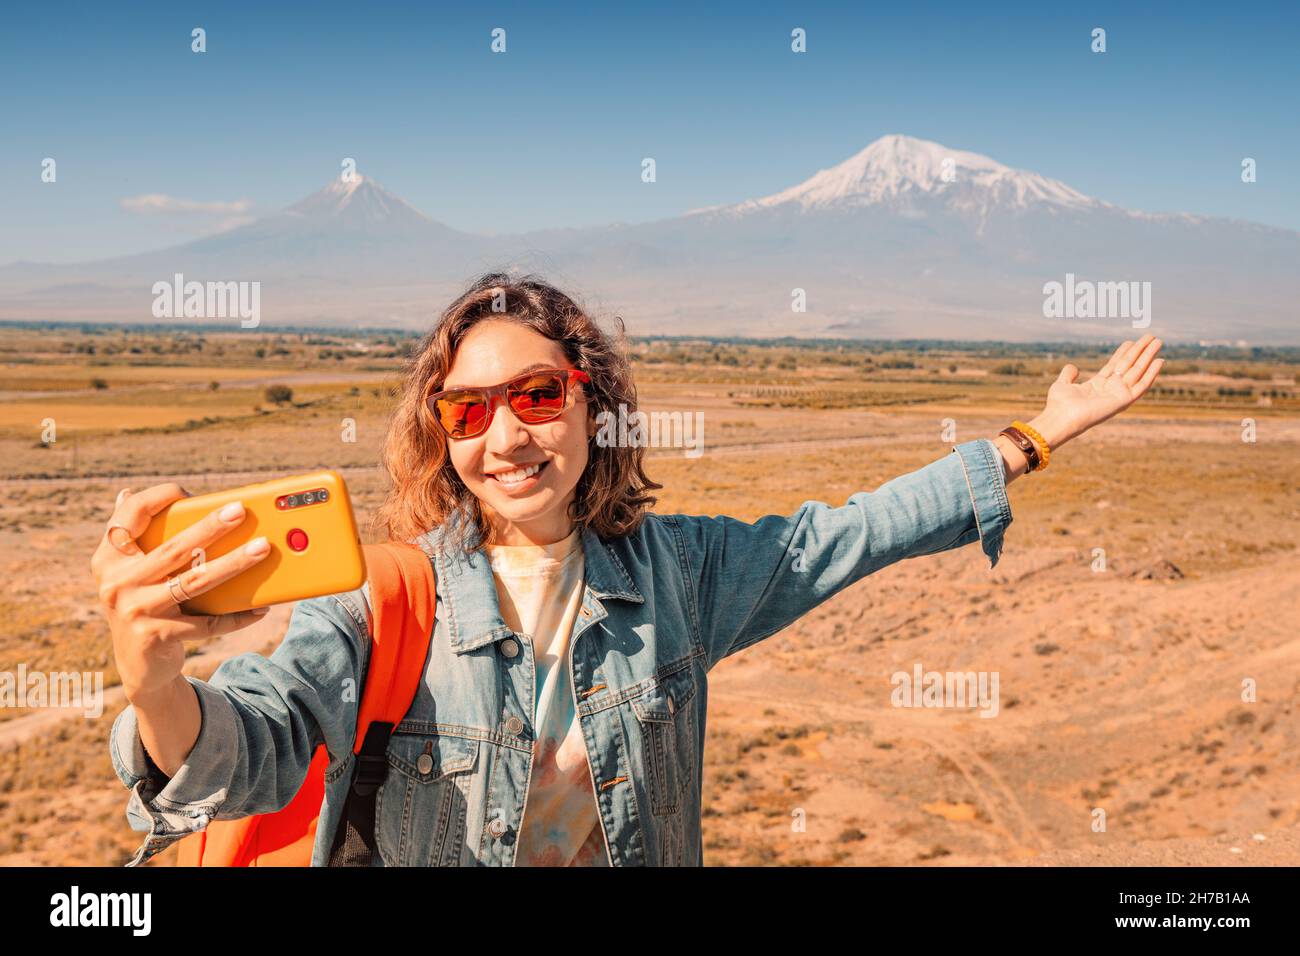 Reisende Frau am Aussichtspunkt, die Selfie-Fotos auf ihrem Smartphone am berühmten Mount Ararat gemacht hat. Reisen und Tourismus in Armenien Stockfoto